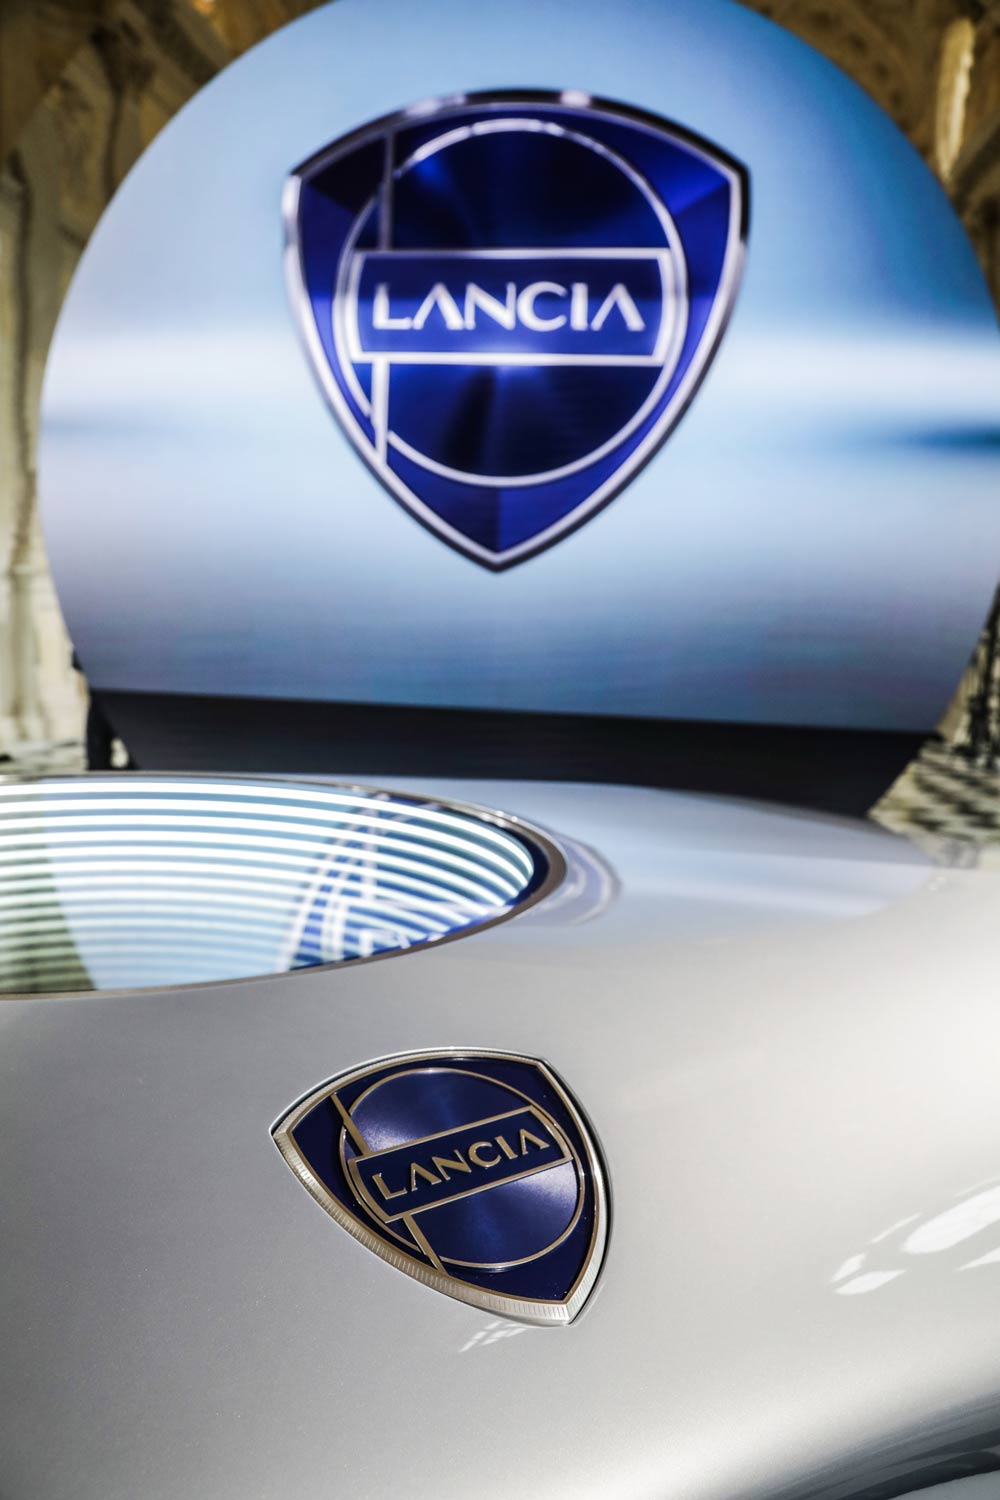 Il Lancia Design Day è l'evento dedicato alla "rinascita" dello storico marchio italiano, fondato nel novembre del 1906 da Vincenzo Lancia.